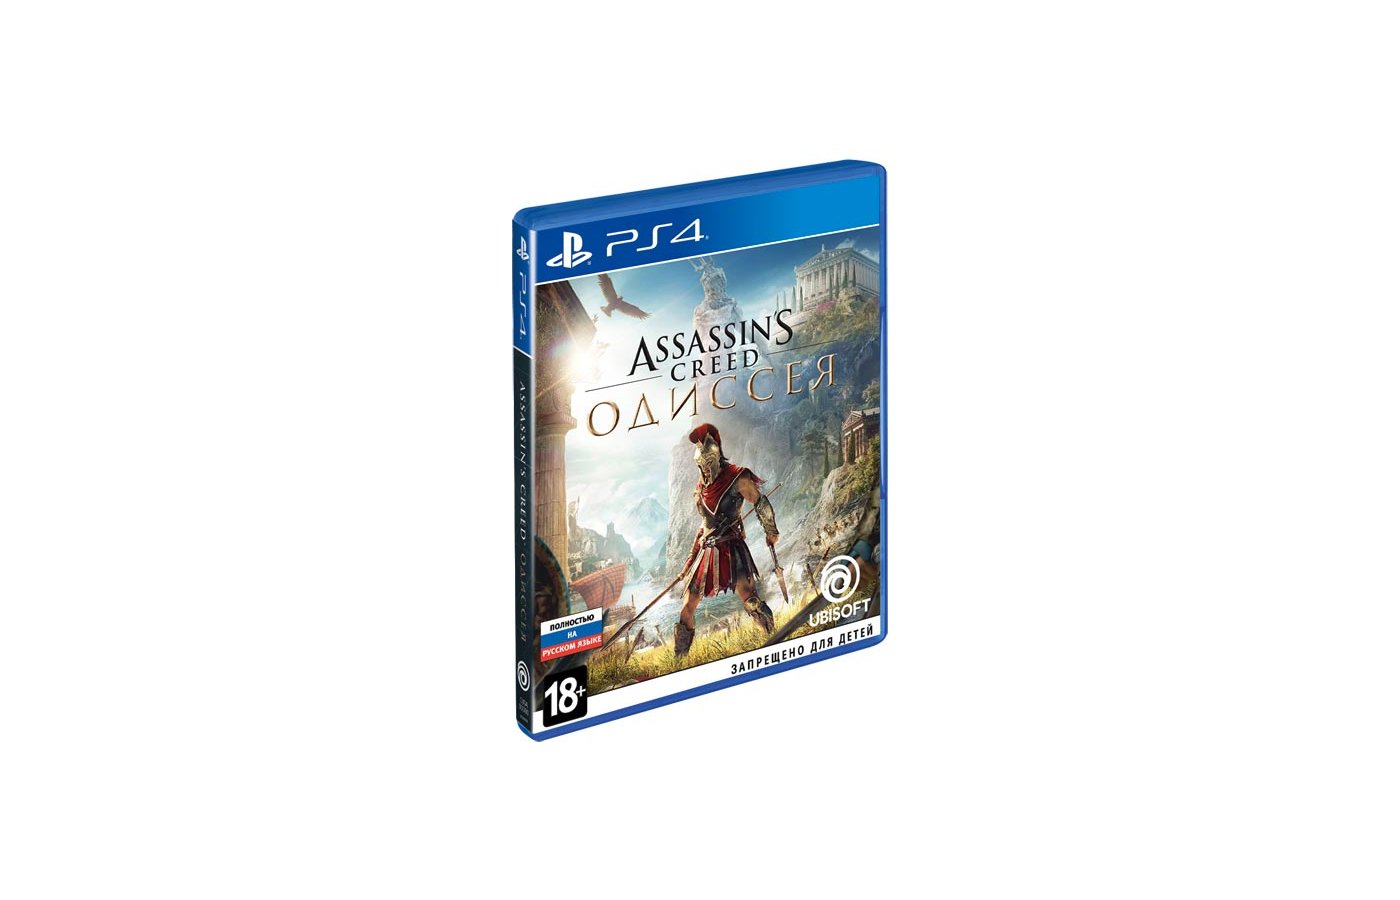 Assassin odyssey ps4. Ассасин Крид Одиссея диск ПС 4. Диск на ПС 4 ассасин Крид Odyssey. Assassin's Creed Одиссея ps4. Ps4 диск Assassins Creed.